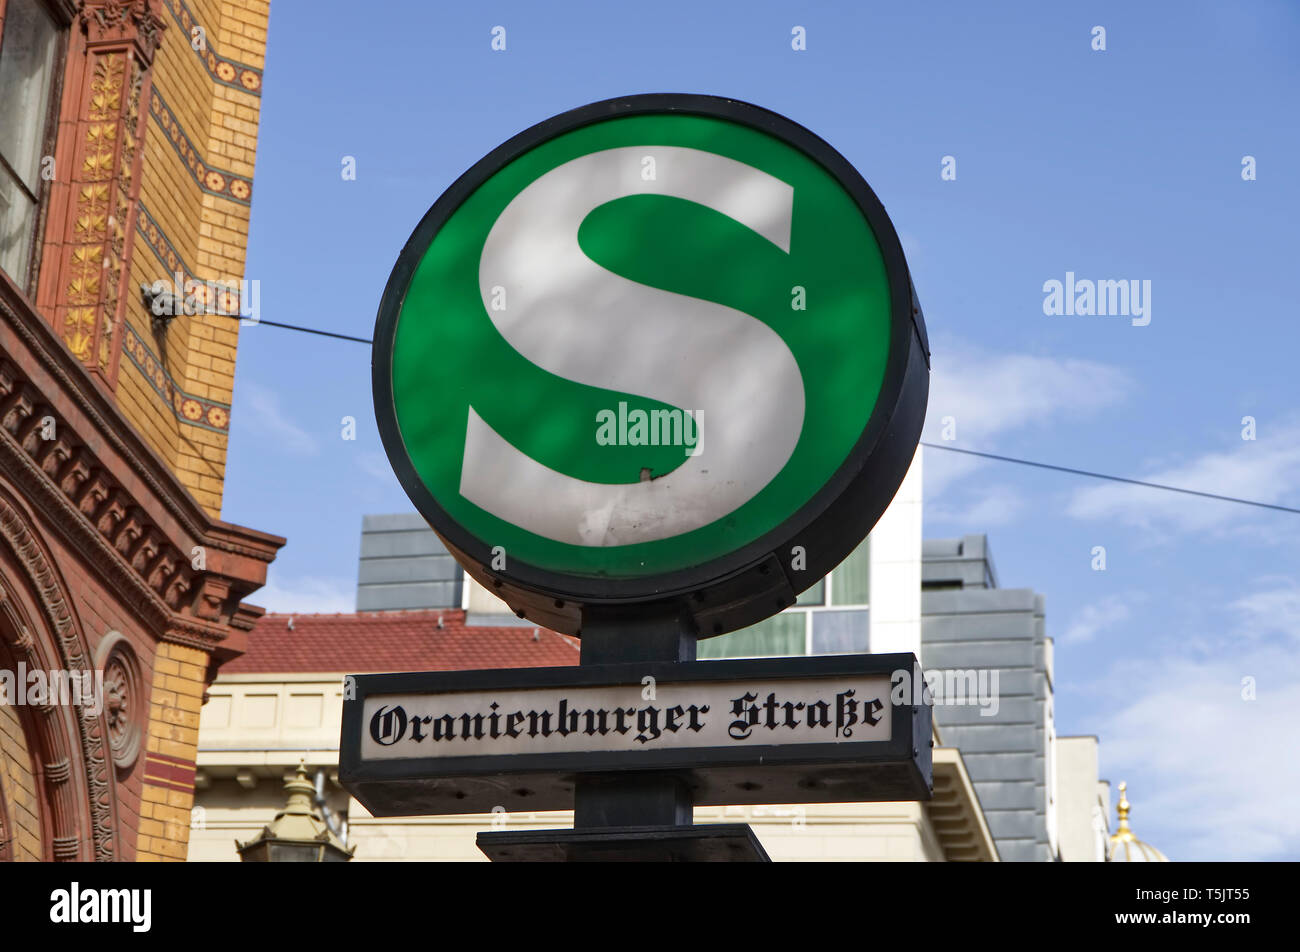 Germania, Berlino, segno della S-Bahn stazione Oranienburger Strasse Foto Stock